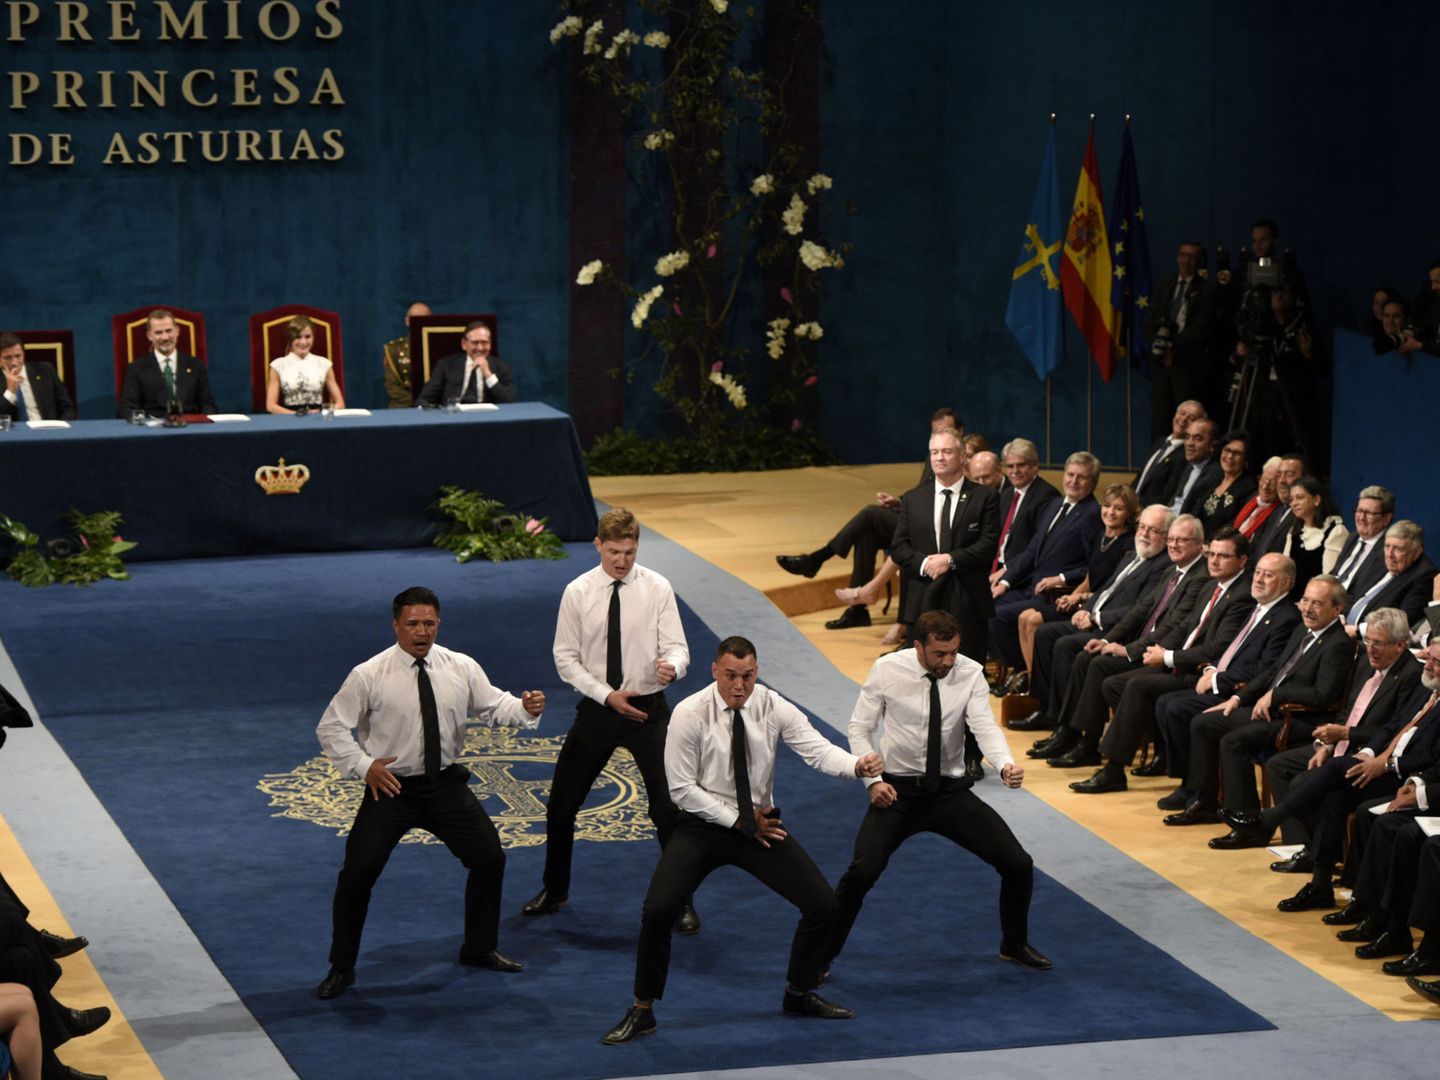 Integrantes de los 'All Blacks' representando el haka durante los premios Princesa de Asturias. (Reuters)